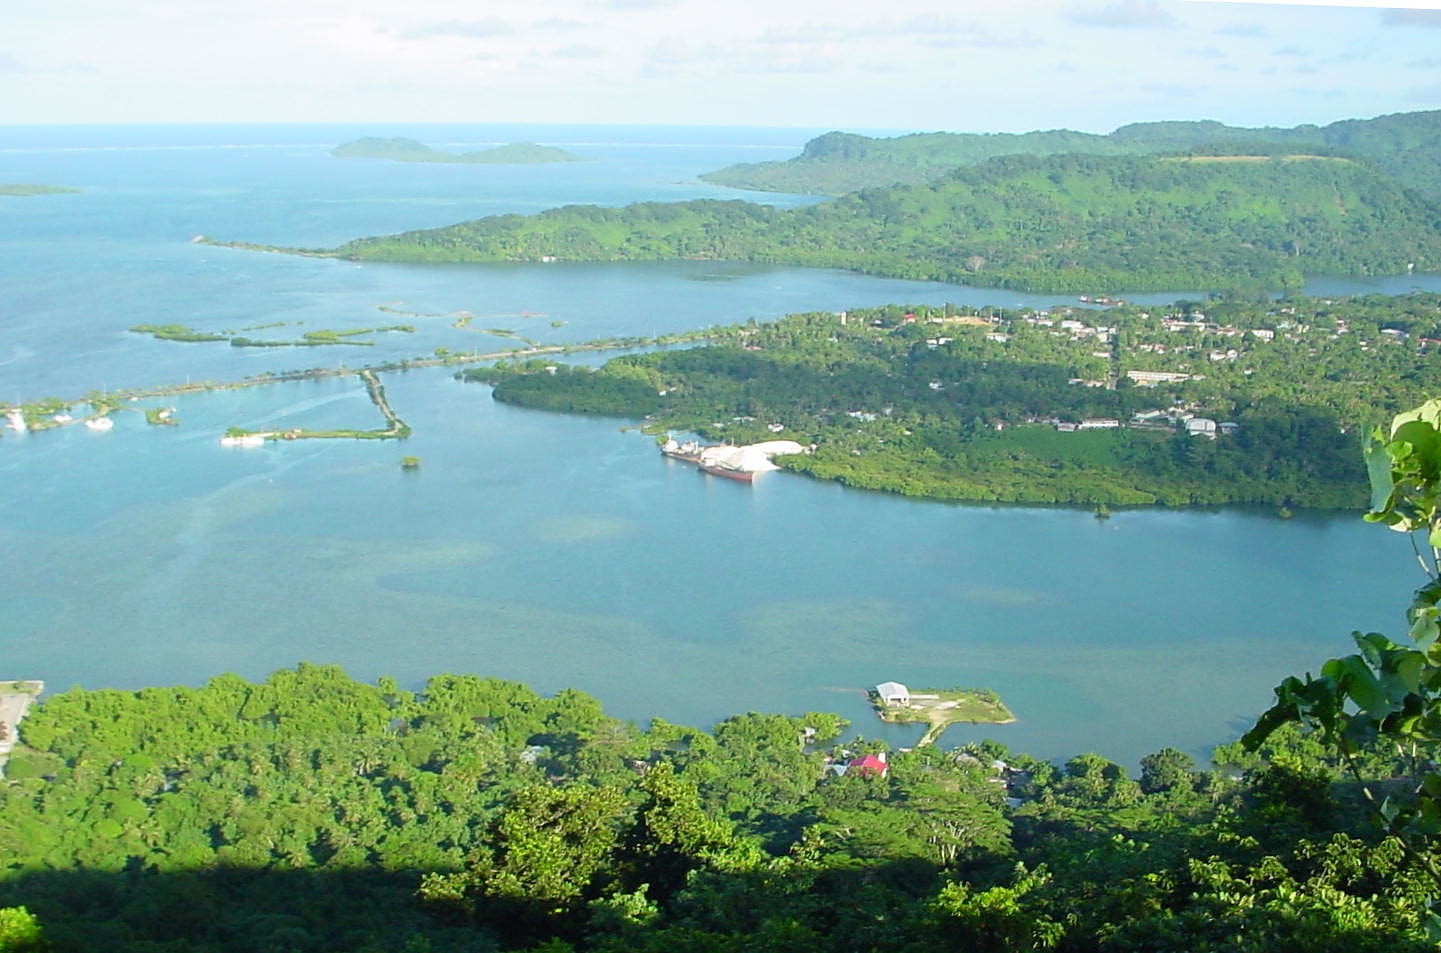 Kolonia, Föderierte Staaten von Mikronesien